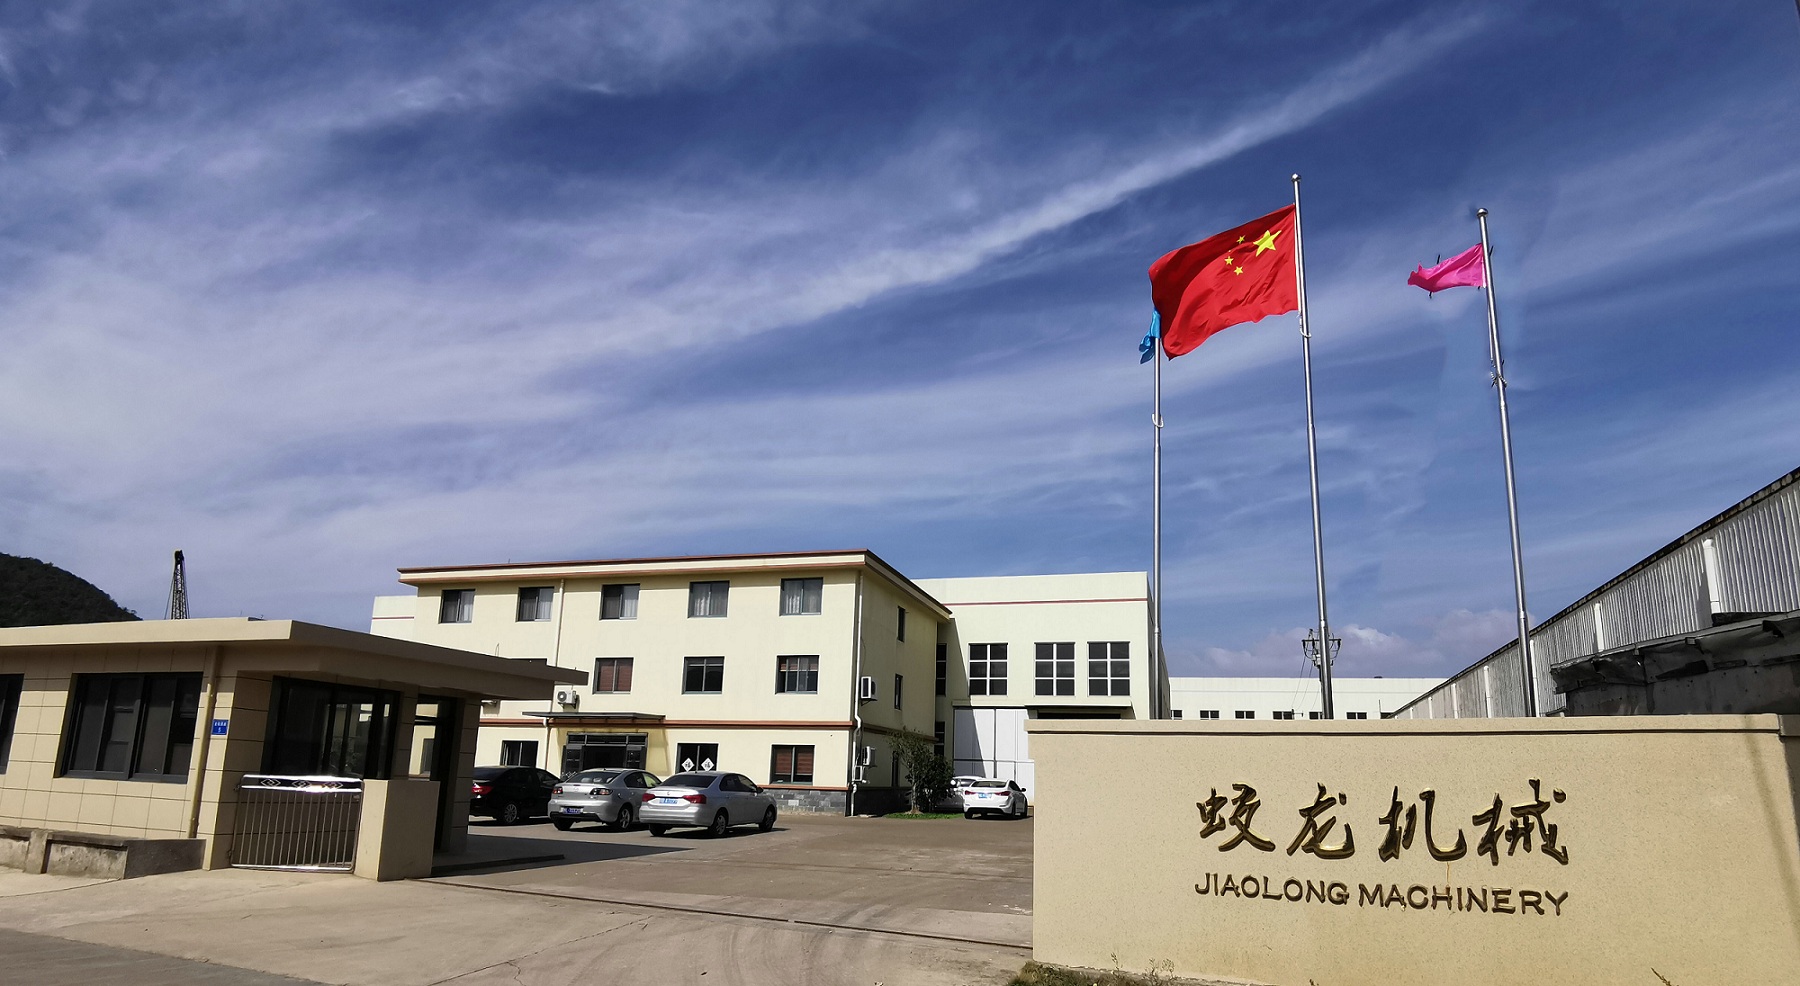 Informations sur la société Jiaolong